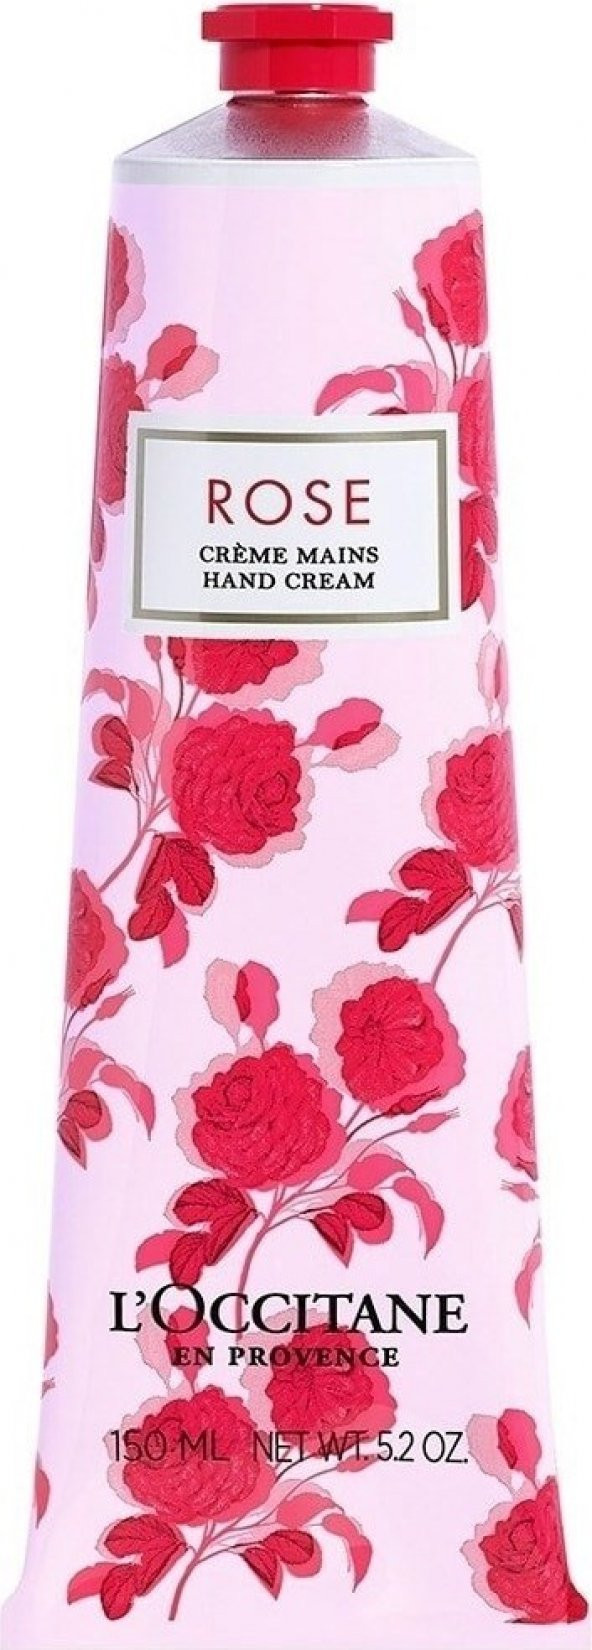 LOccitane Rose El Kremi Hand Cream 150 ml